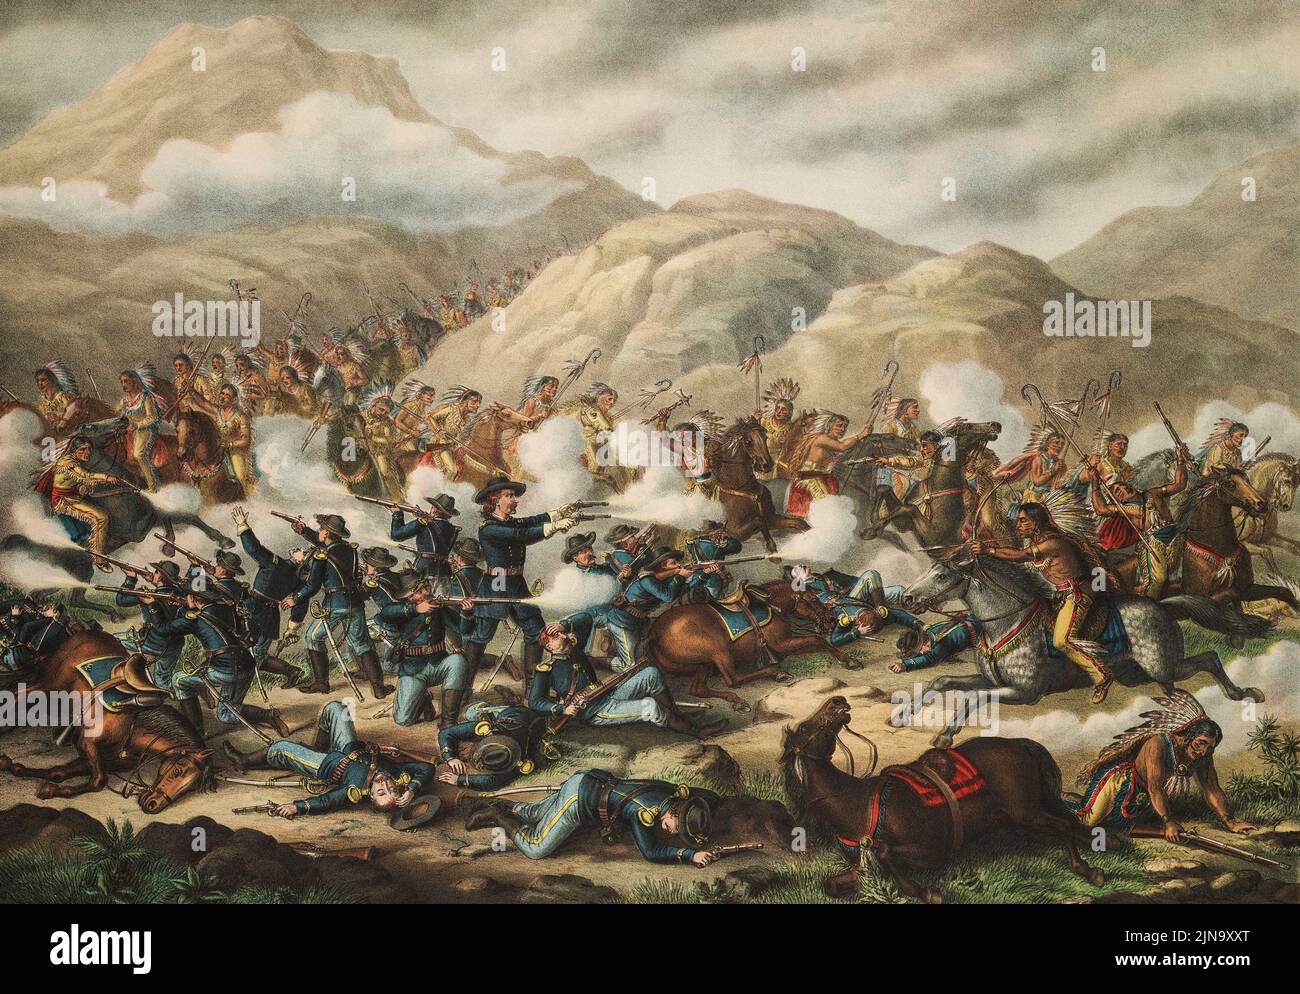 Ultimo stand del Custer alla battaglia del piccolo Bighorn, 25 giugno 1876. Generale George Armstrong Custer, 1839 - 1876. La battaglia fu la più importante nella Grande Guerra di Sioux del 1876. Dopo un lavoro di un artista non identificato pubblicato nel 1889 da Kurtz e Allison. Foto Stock